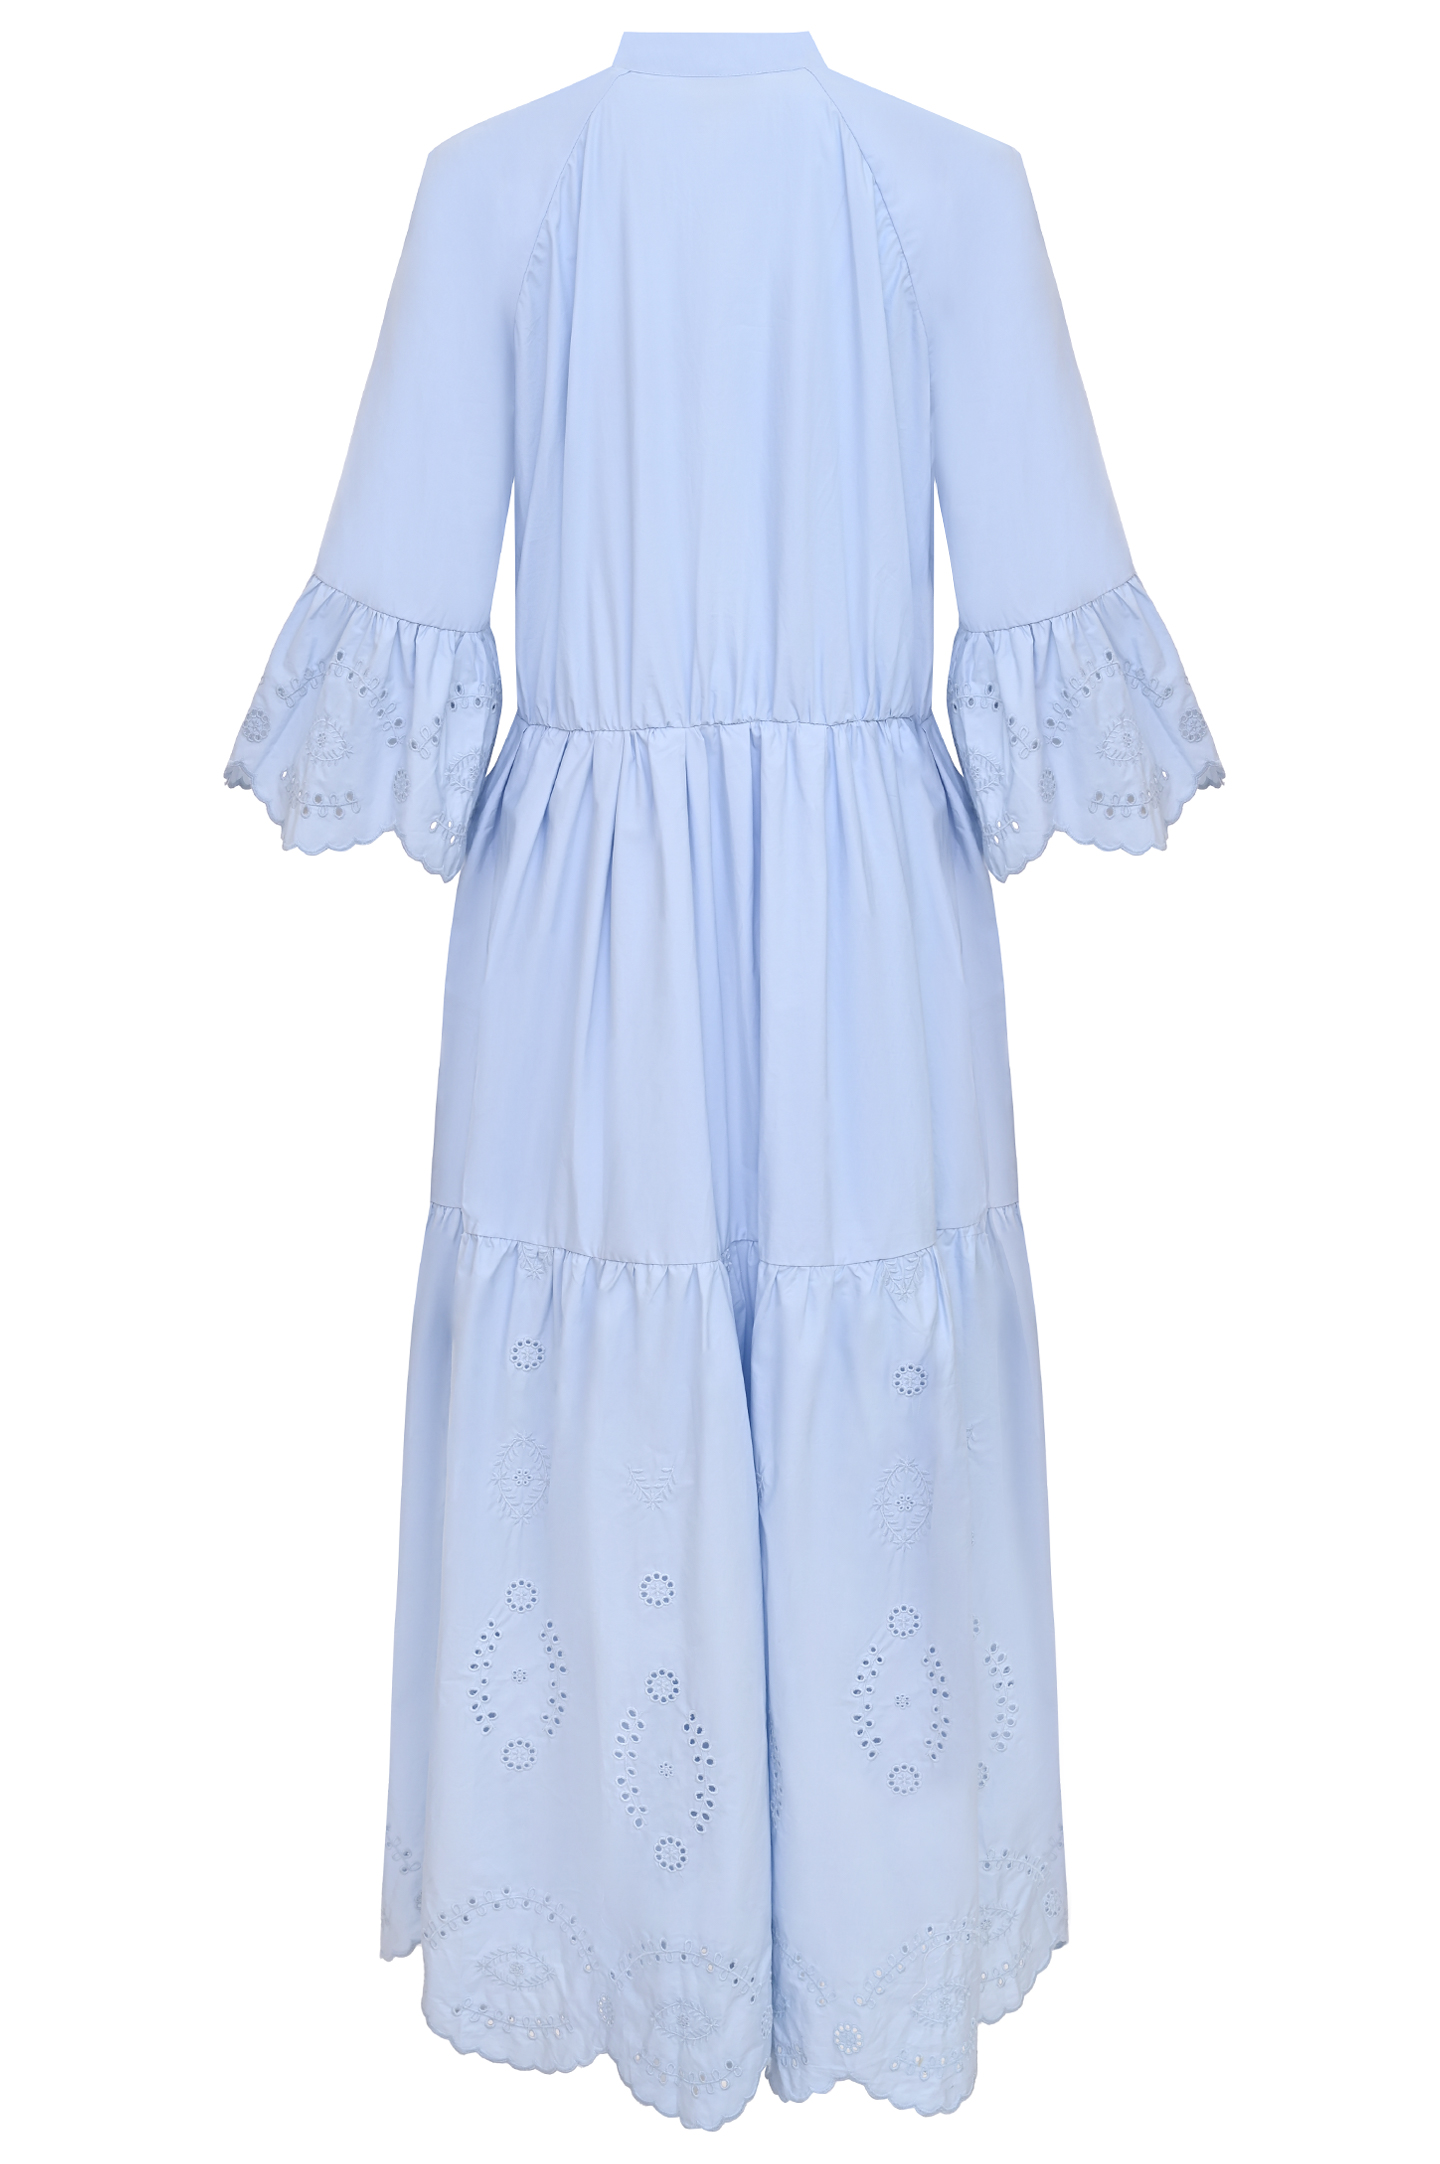 Платье SELF PORTRAIT RS22-061M, цвет: Голубой, Женский